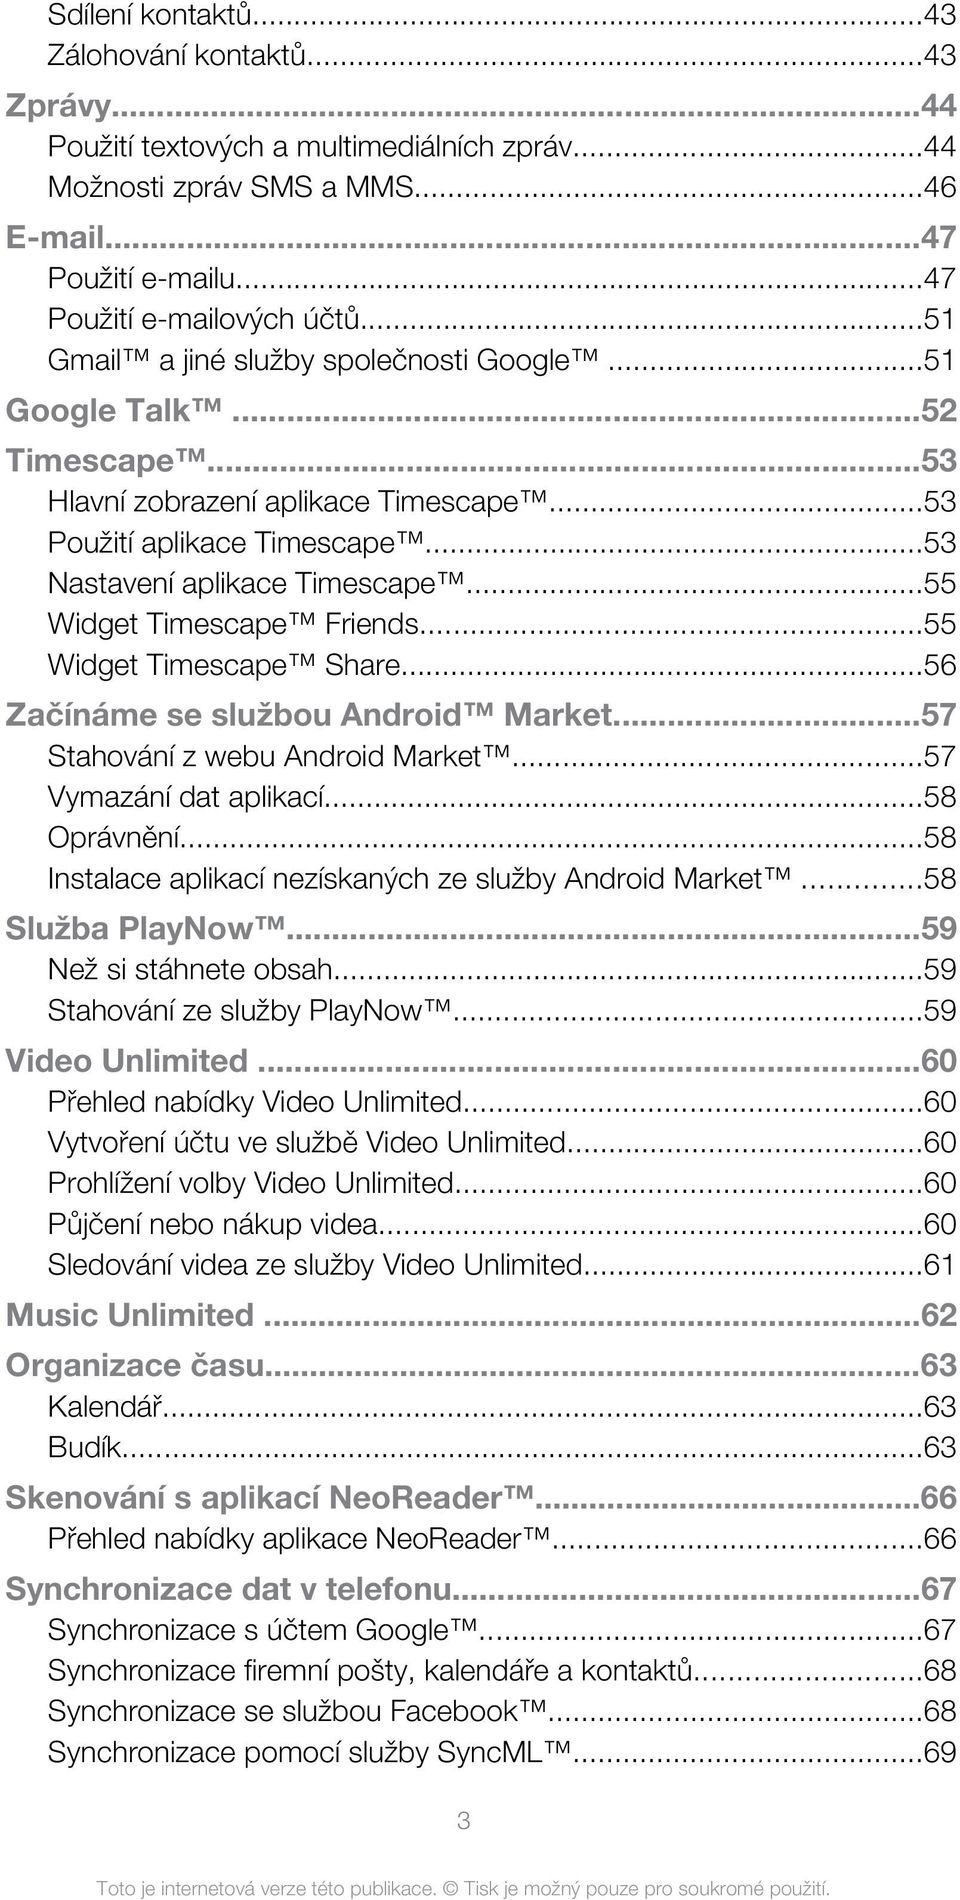 ..55 Widget Timescape Friends...55 Widget Timescape Share...56 Začínáme se službou Android Market...57 Stahování z webu Android Market...57 Vymazání dat aplikací...58 Oprávnění.